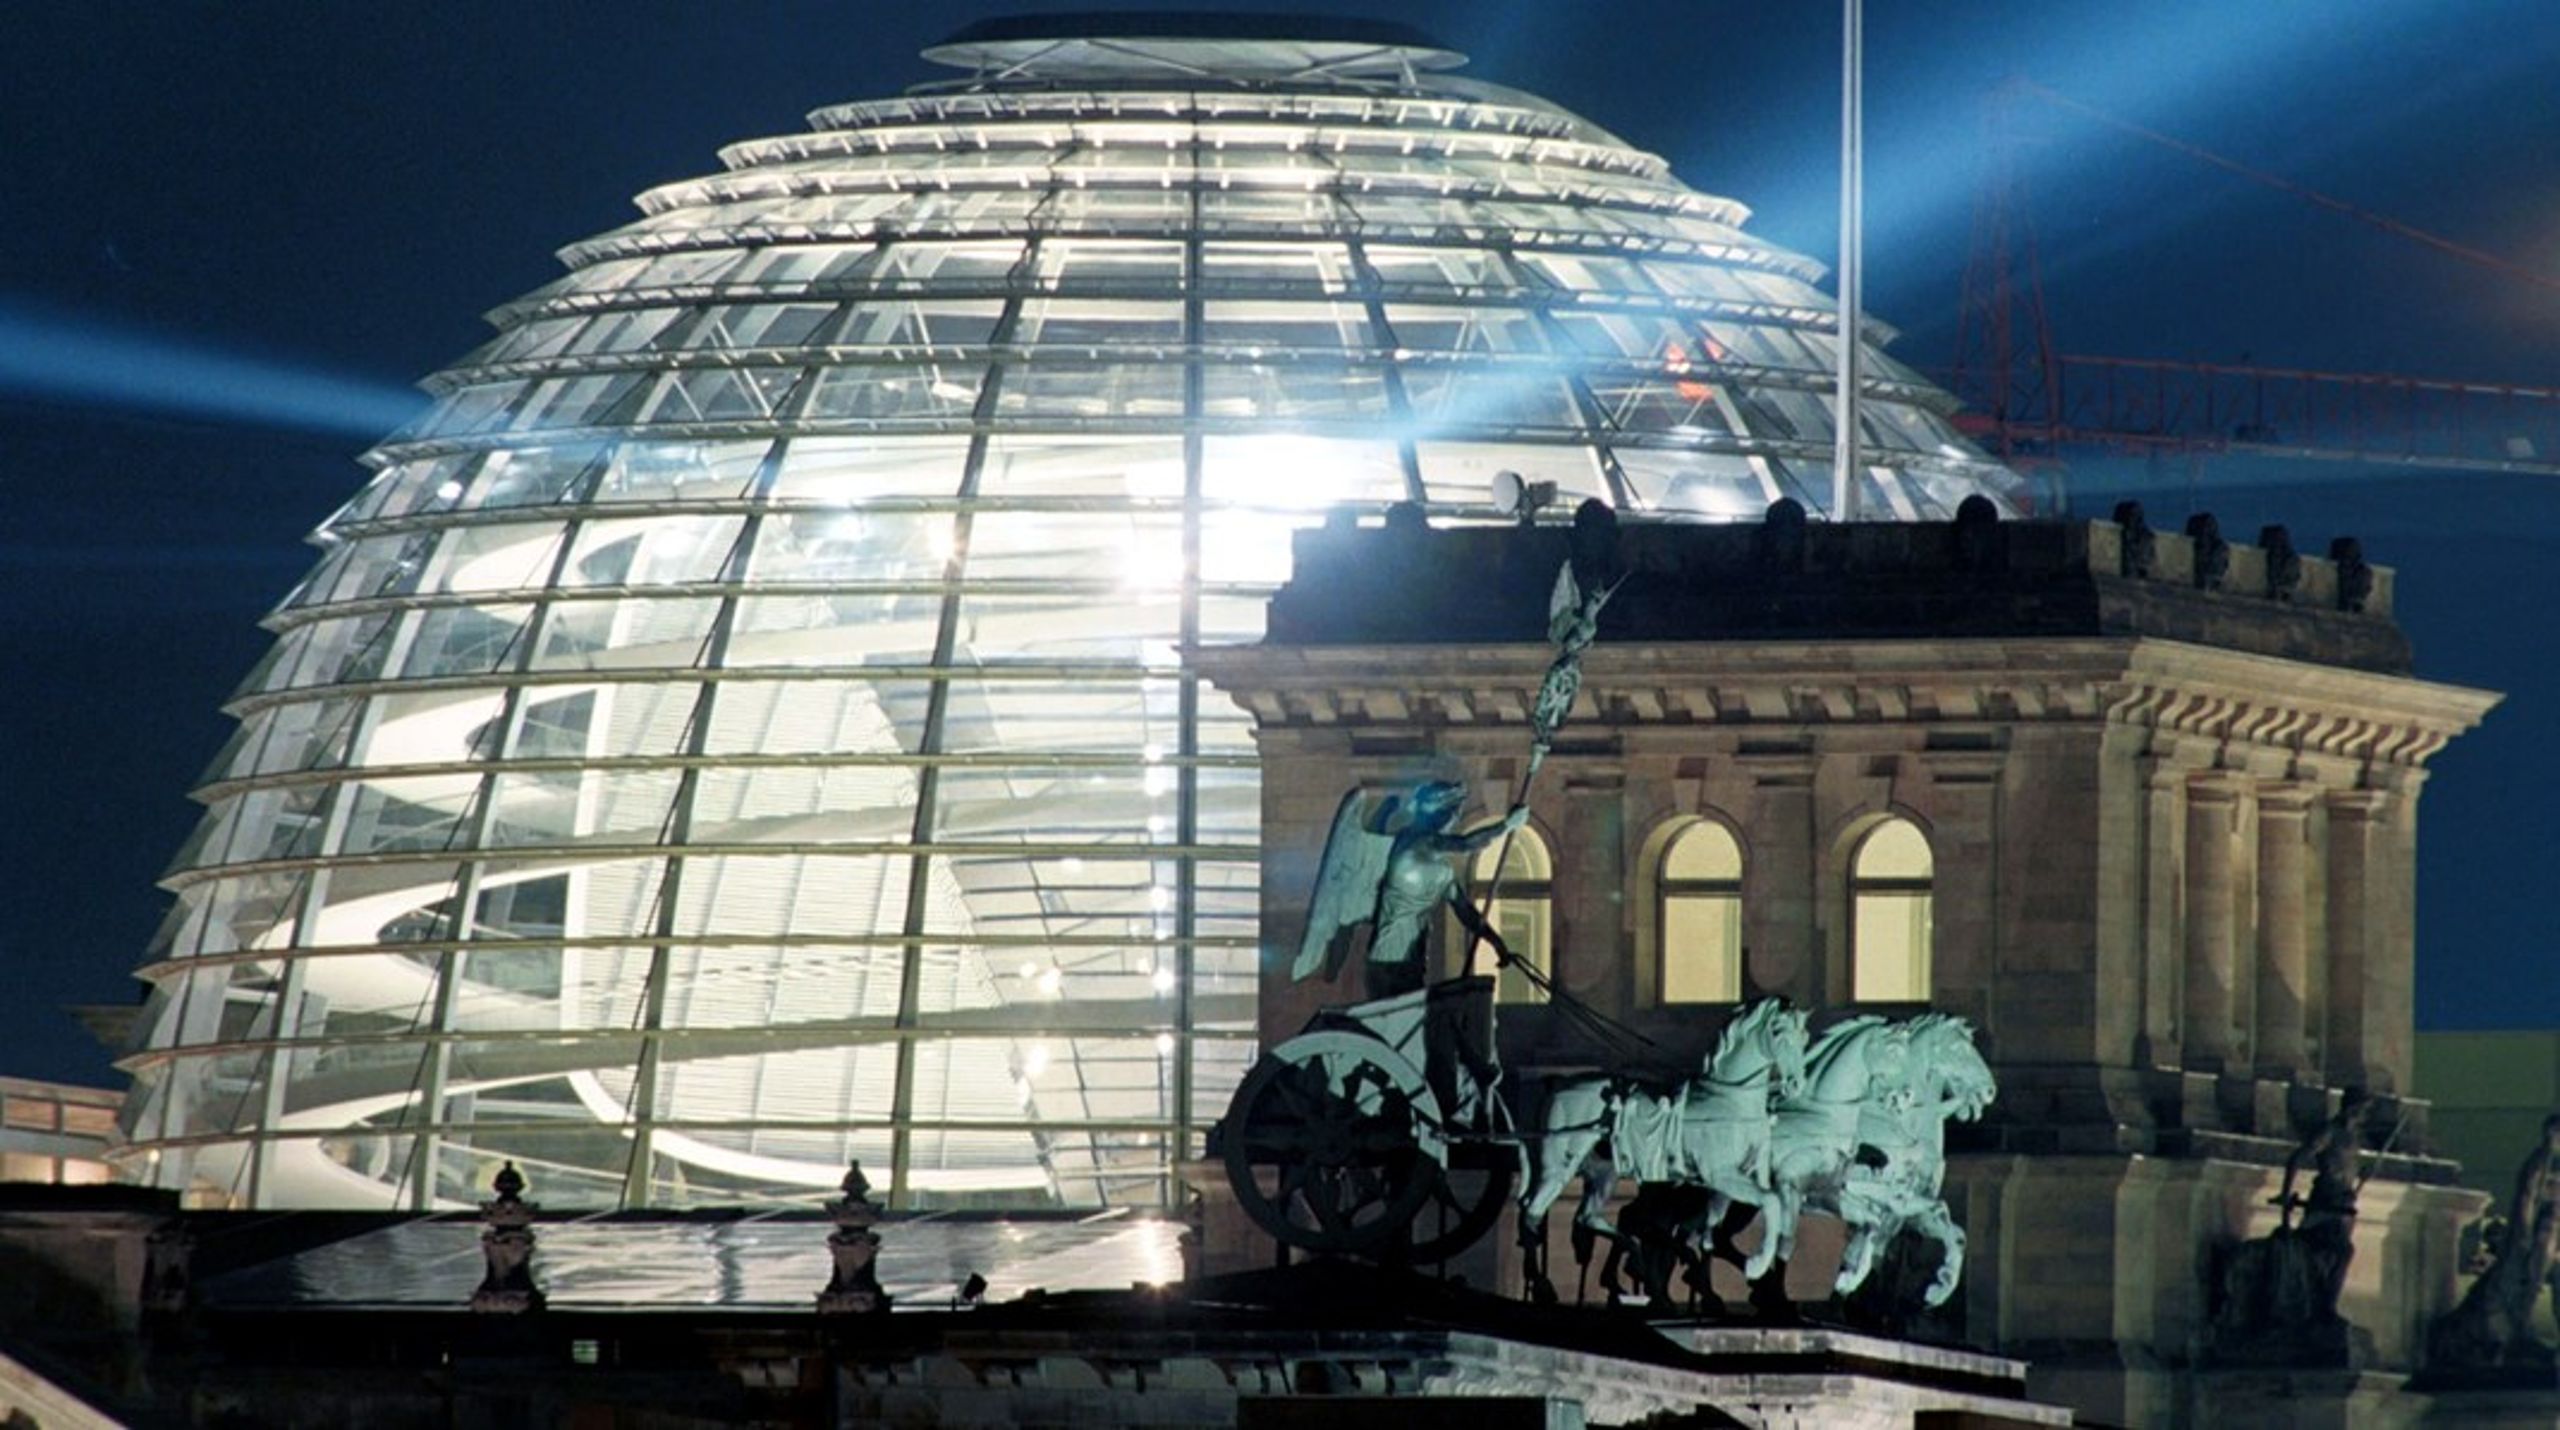 Energikrisen i Europa har blandt andet medført, at&nbsp;lyset i den tyske Rigsdags glaskuppel har været slukket om aftenen siden sommeren 2022.